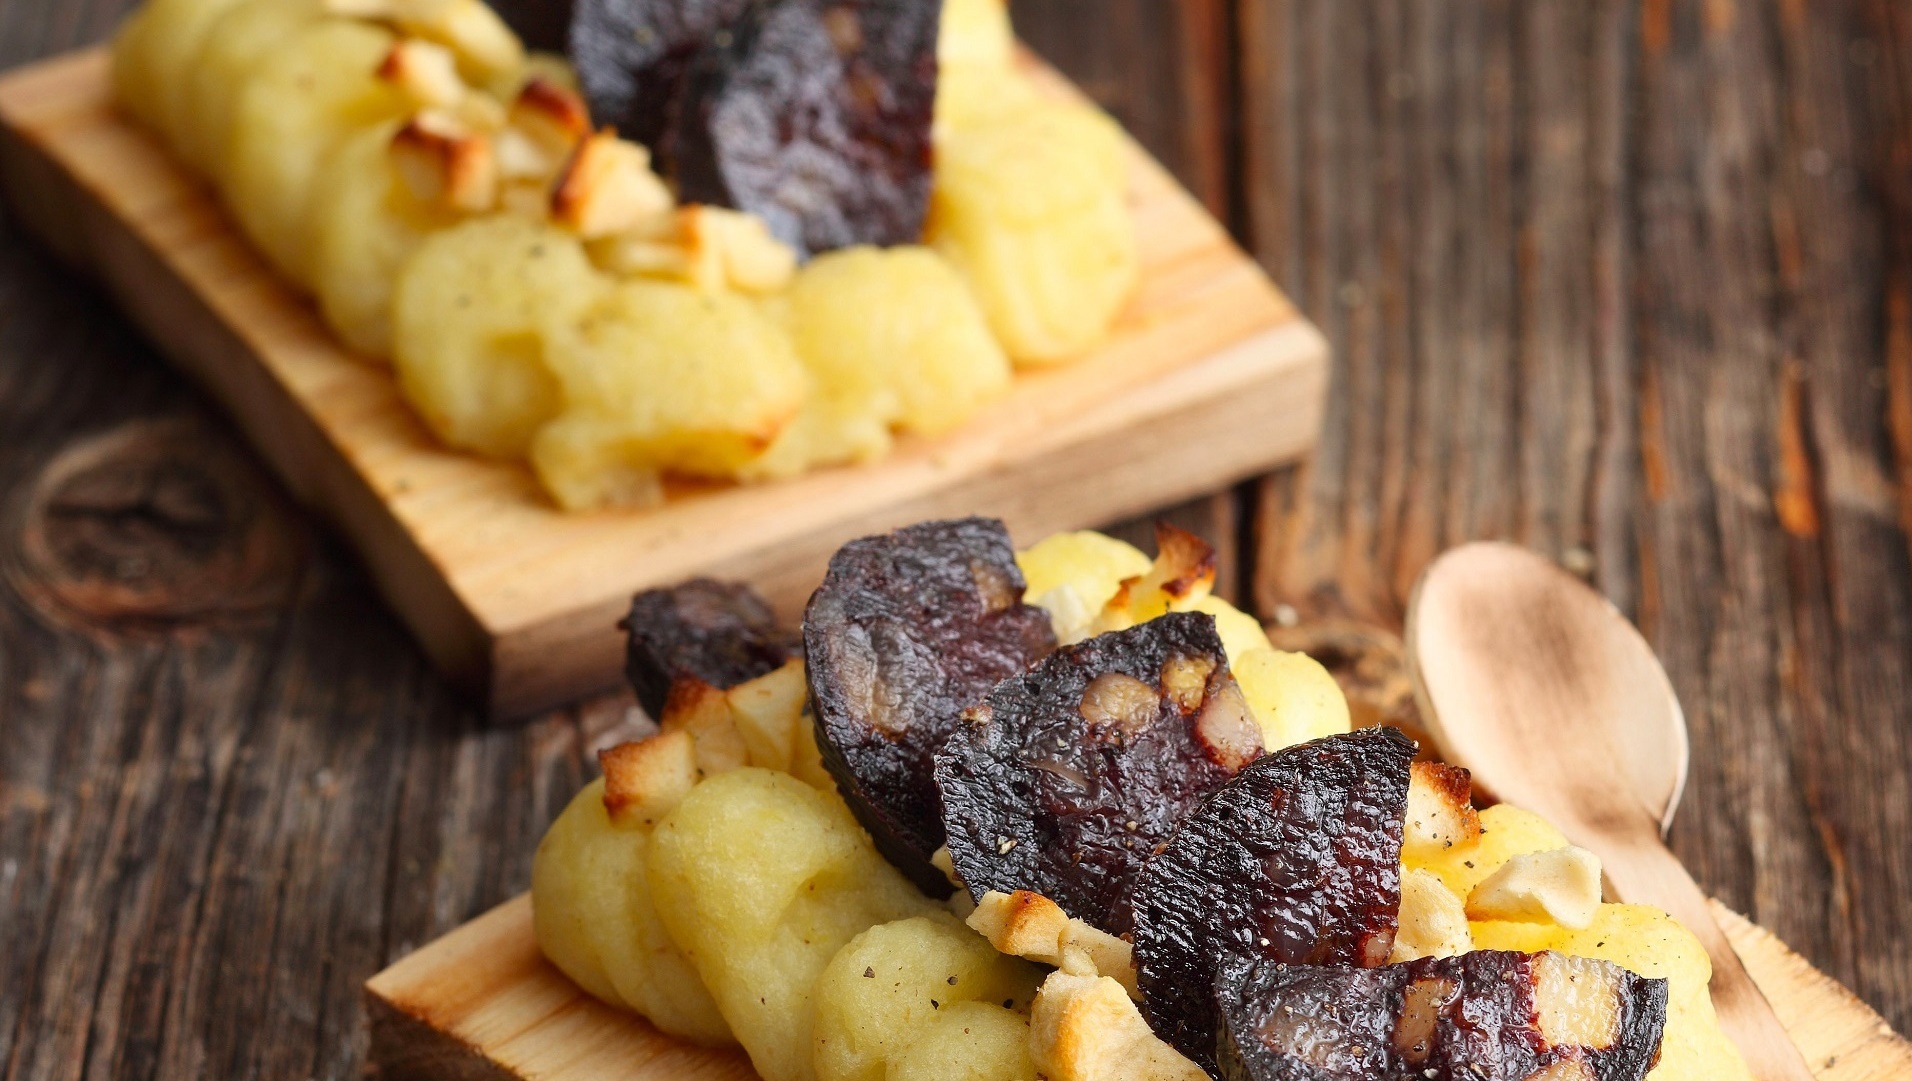  Herzhafte Schwarzwurst, Kartoffeln und Dörrapfel vom Zedernholzbrett mit einer Weißweinschorle aus dem heimischen Weingut


